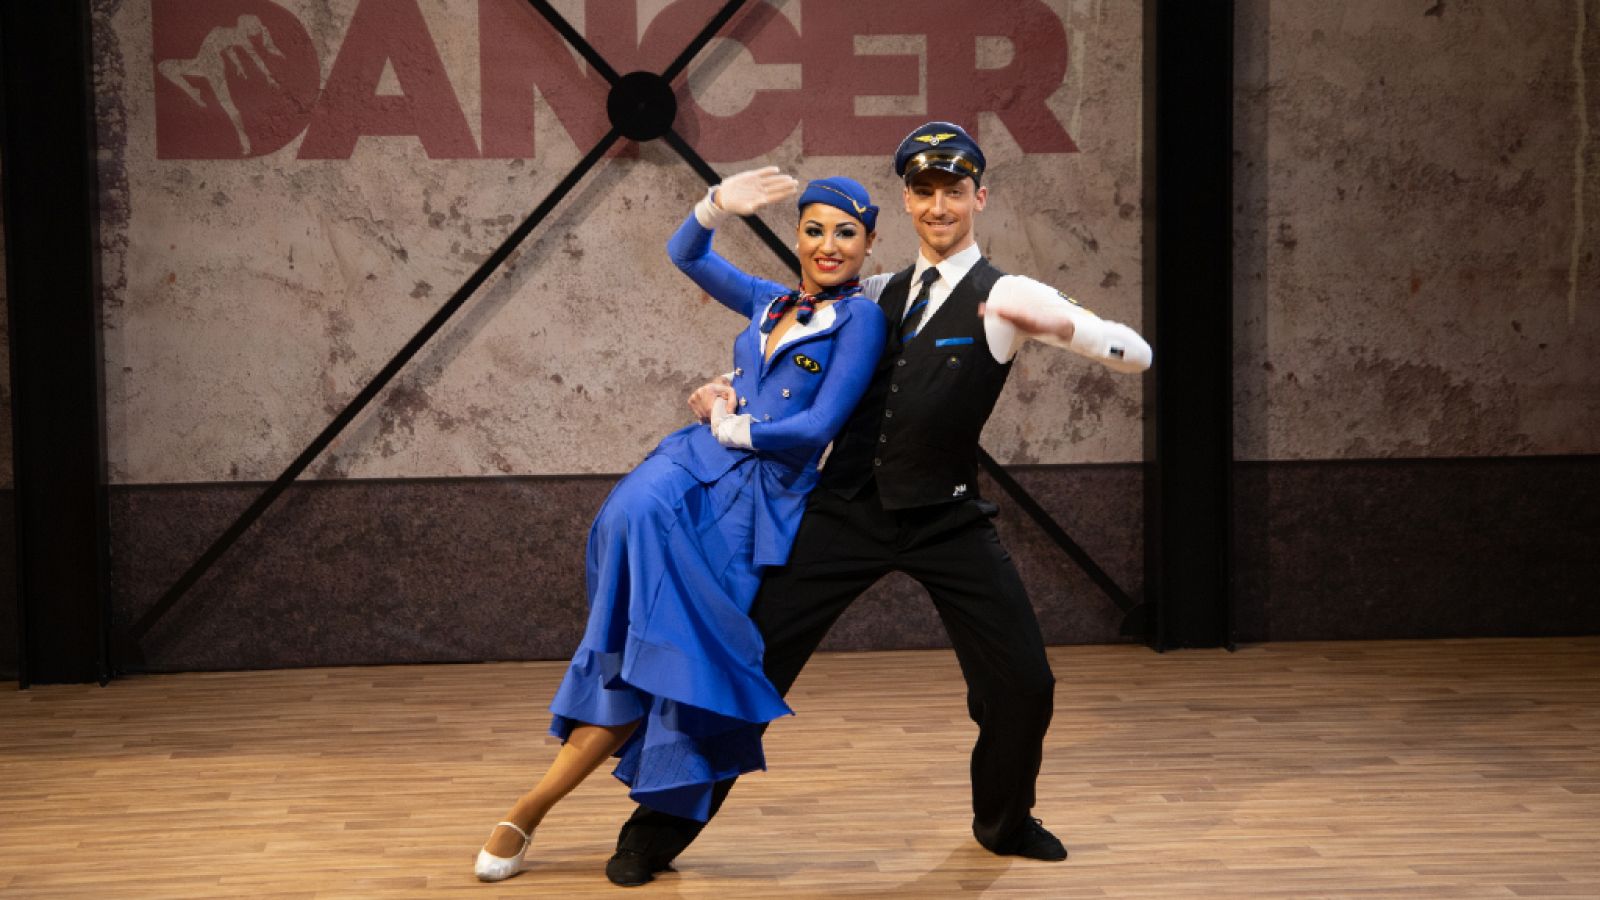 The Dancer - Alegato y actuación de Gemma y Edgar